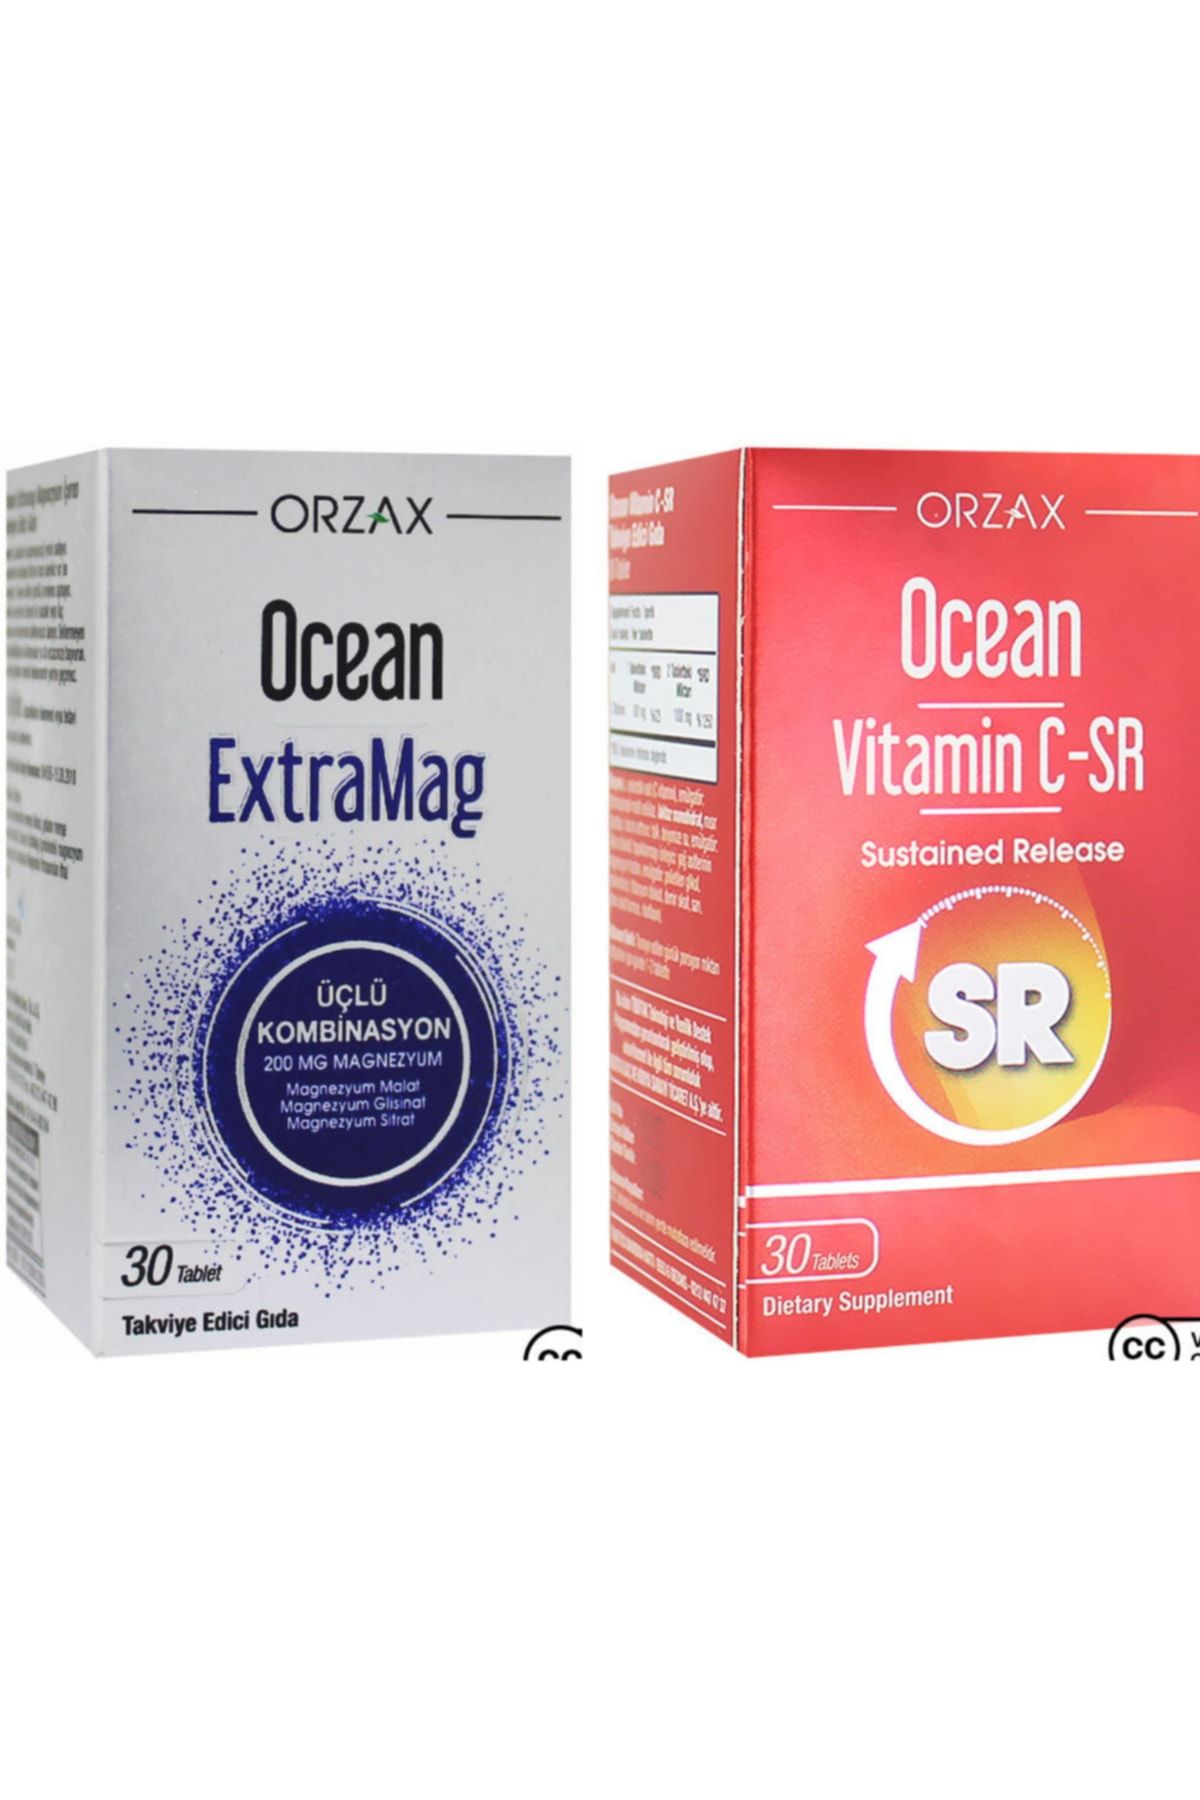 Ocean Extramag Üçlü Kombinasyon 30 Tablet + Vitamin C-sr 30 Tablet